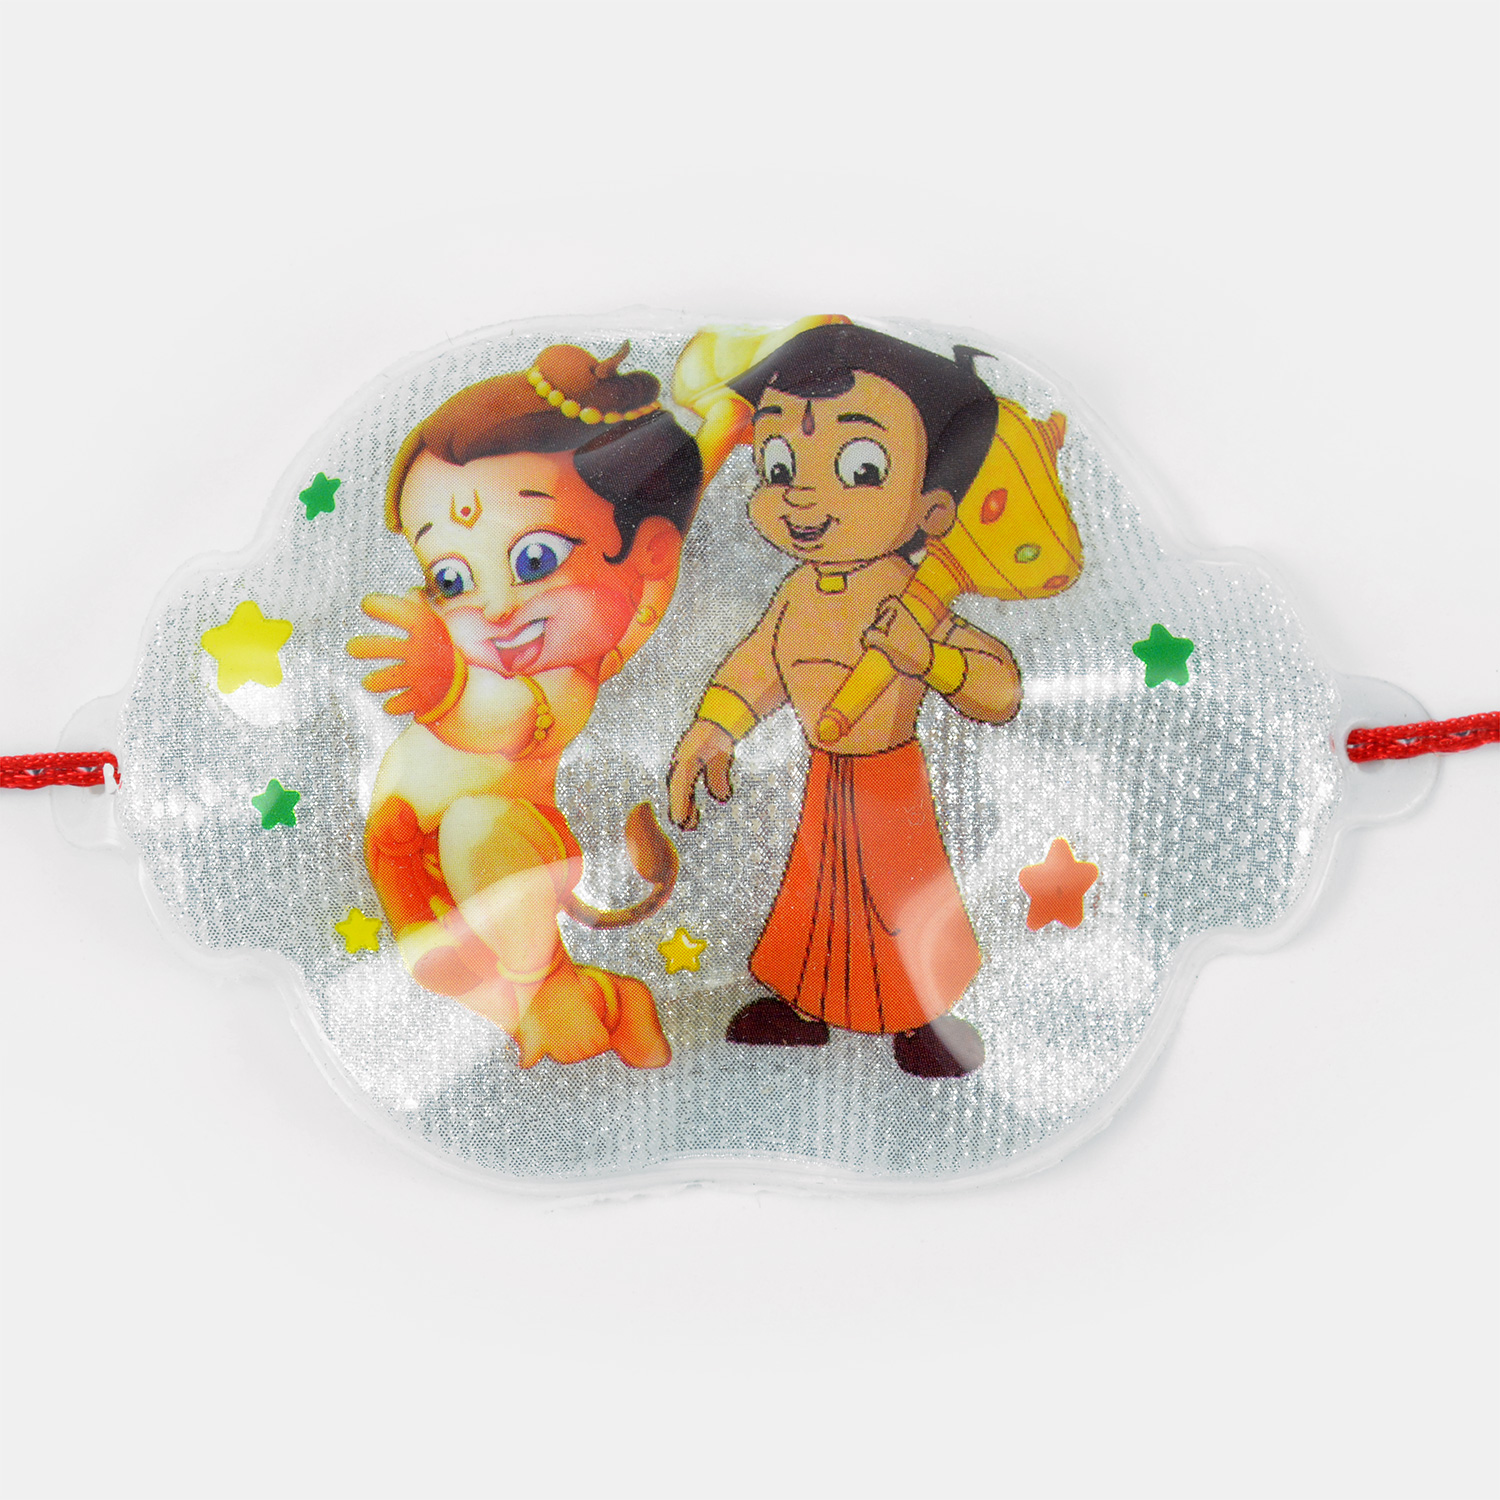 Buy and Send Bal Hanuman with Bheem Rakhi for Kids Online for Kids, Order  to Deliver Bal Hanuman with Bheem Rakhi for Kids for Raksha Bandhan